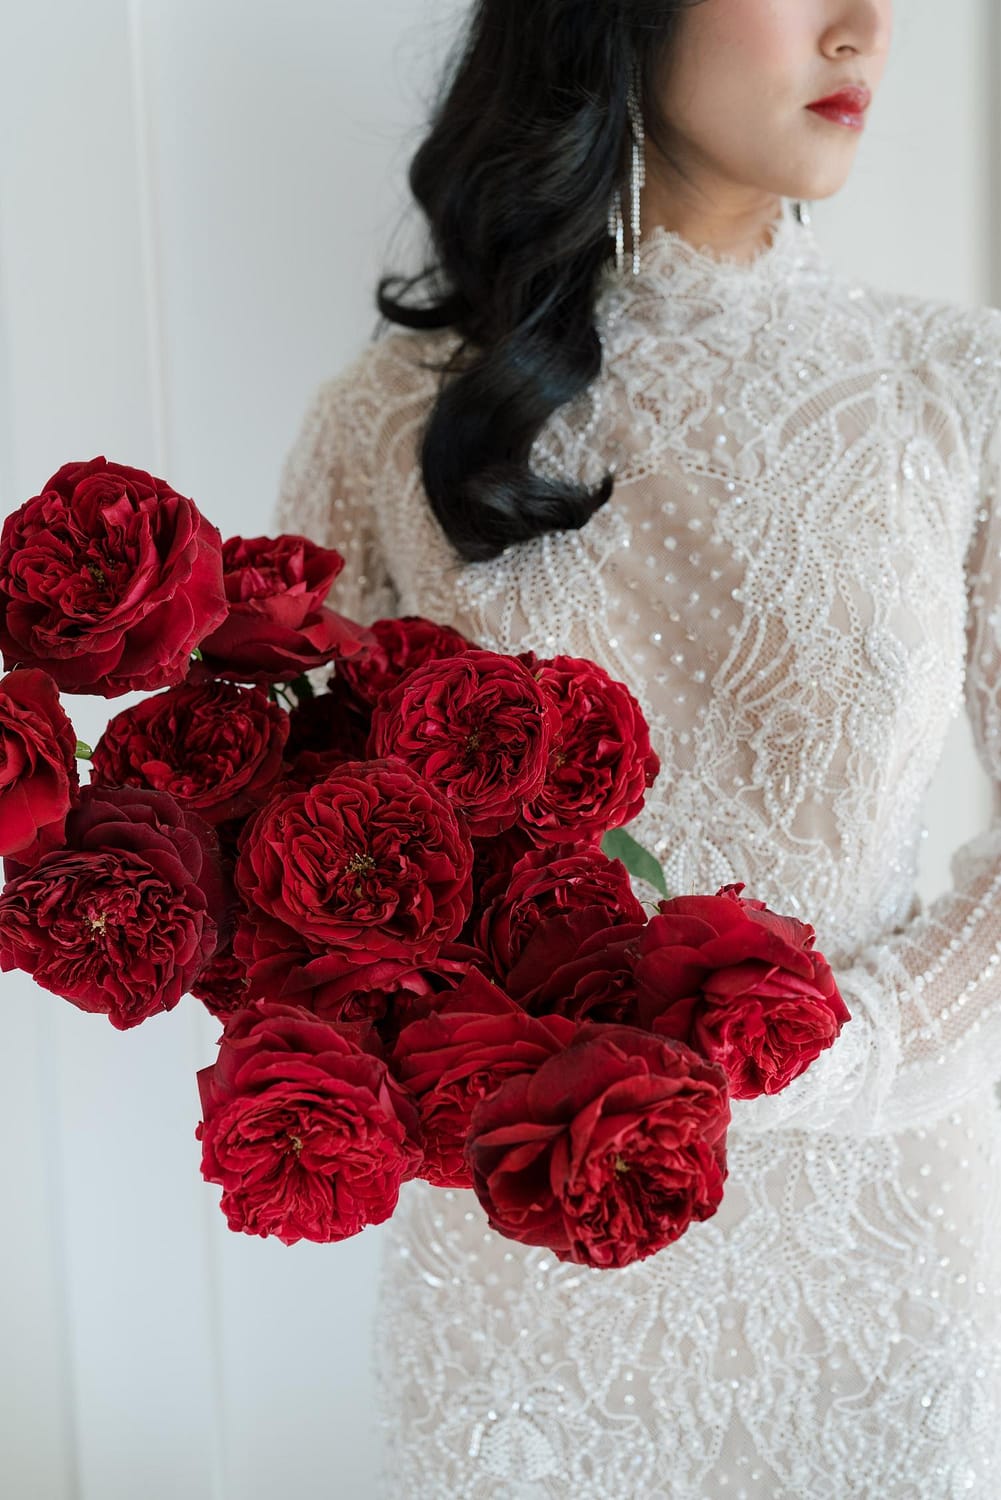 الوردة الحمراء لحفل الزفاف